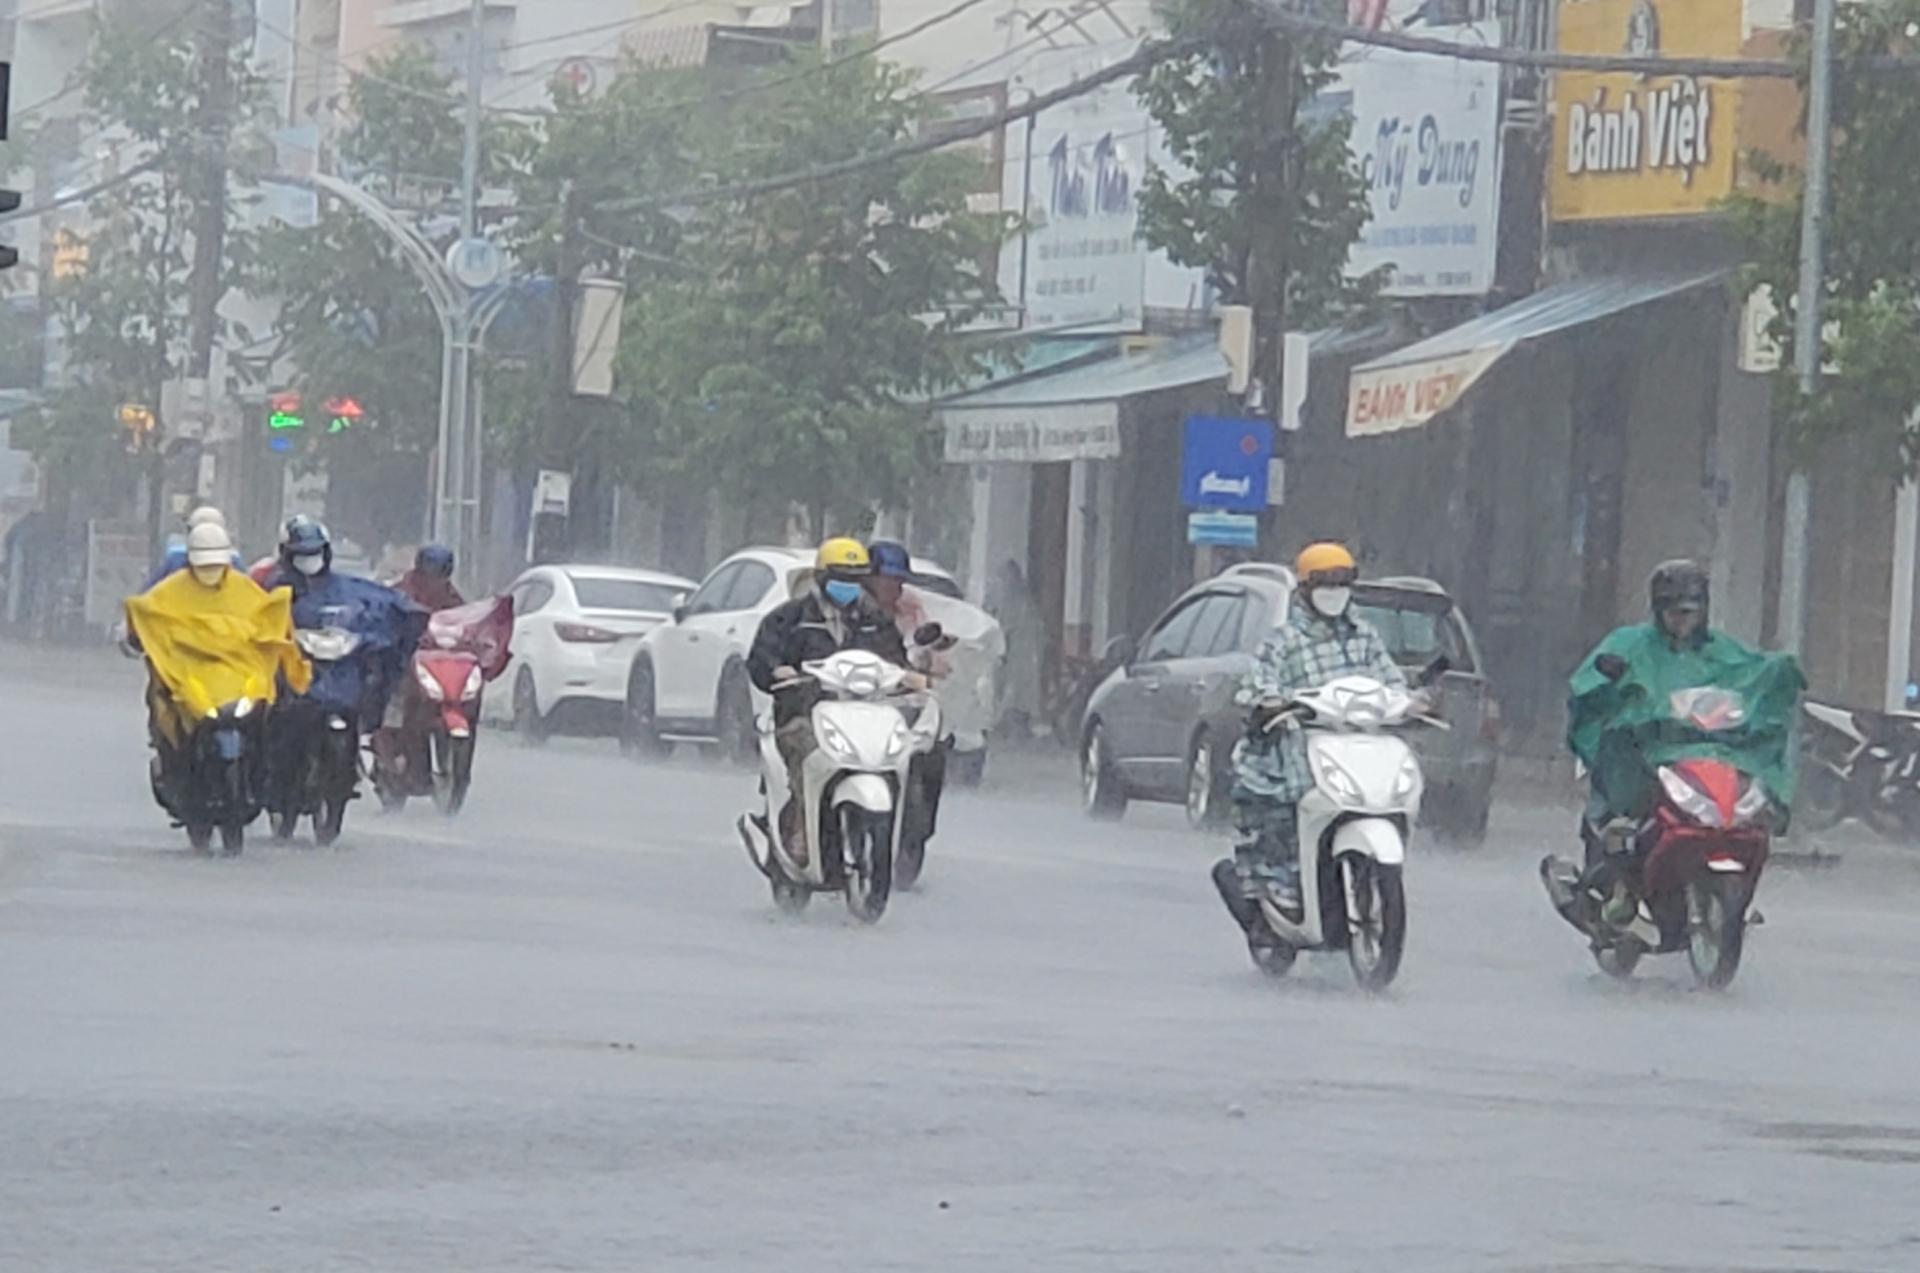 Tin dự báo mưa lớn khu vực tỉnh Quảng Ngãi